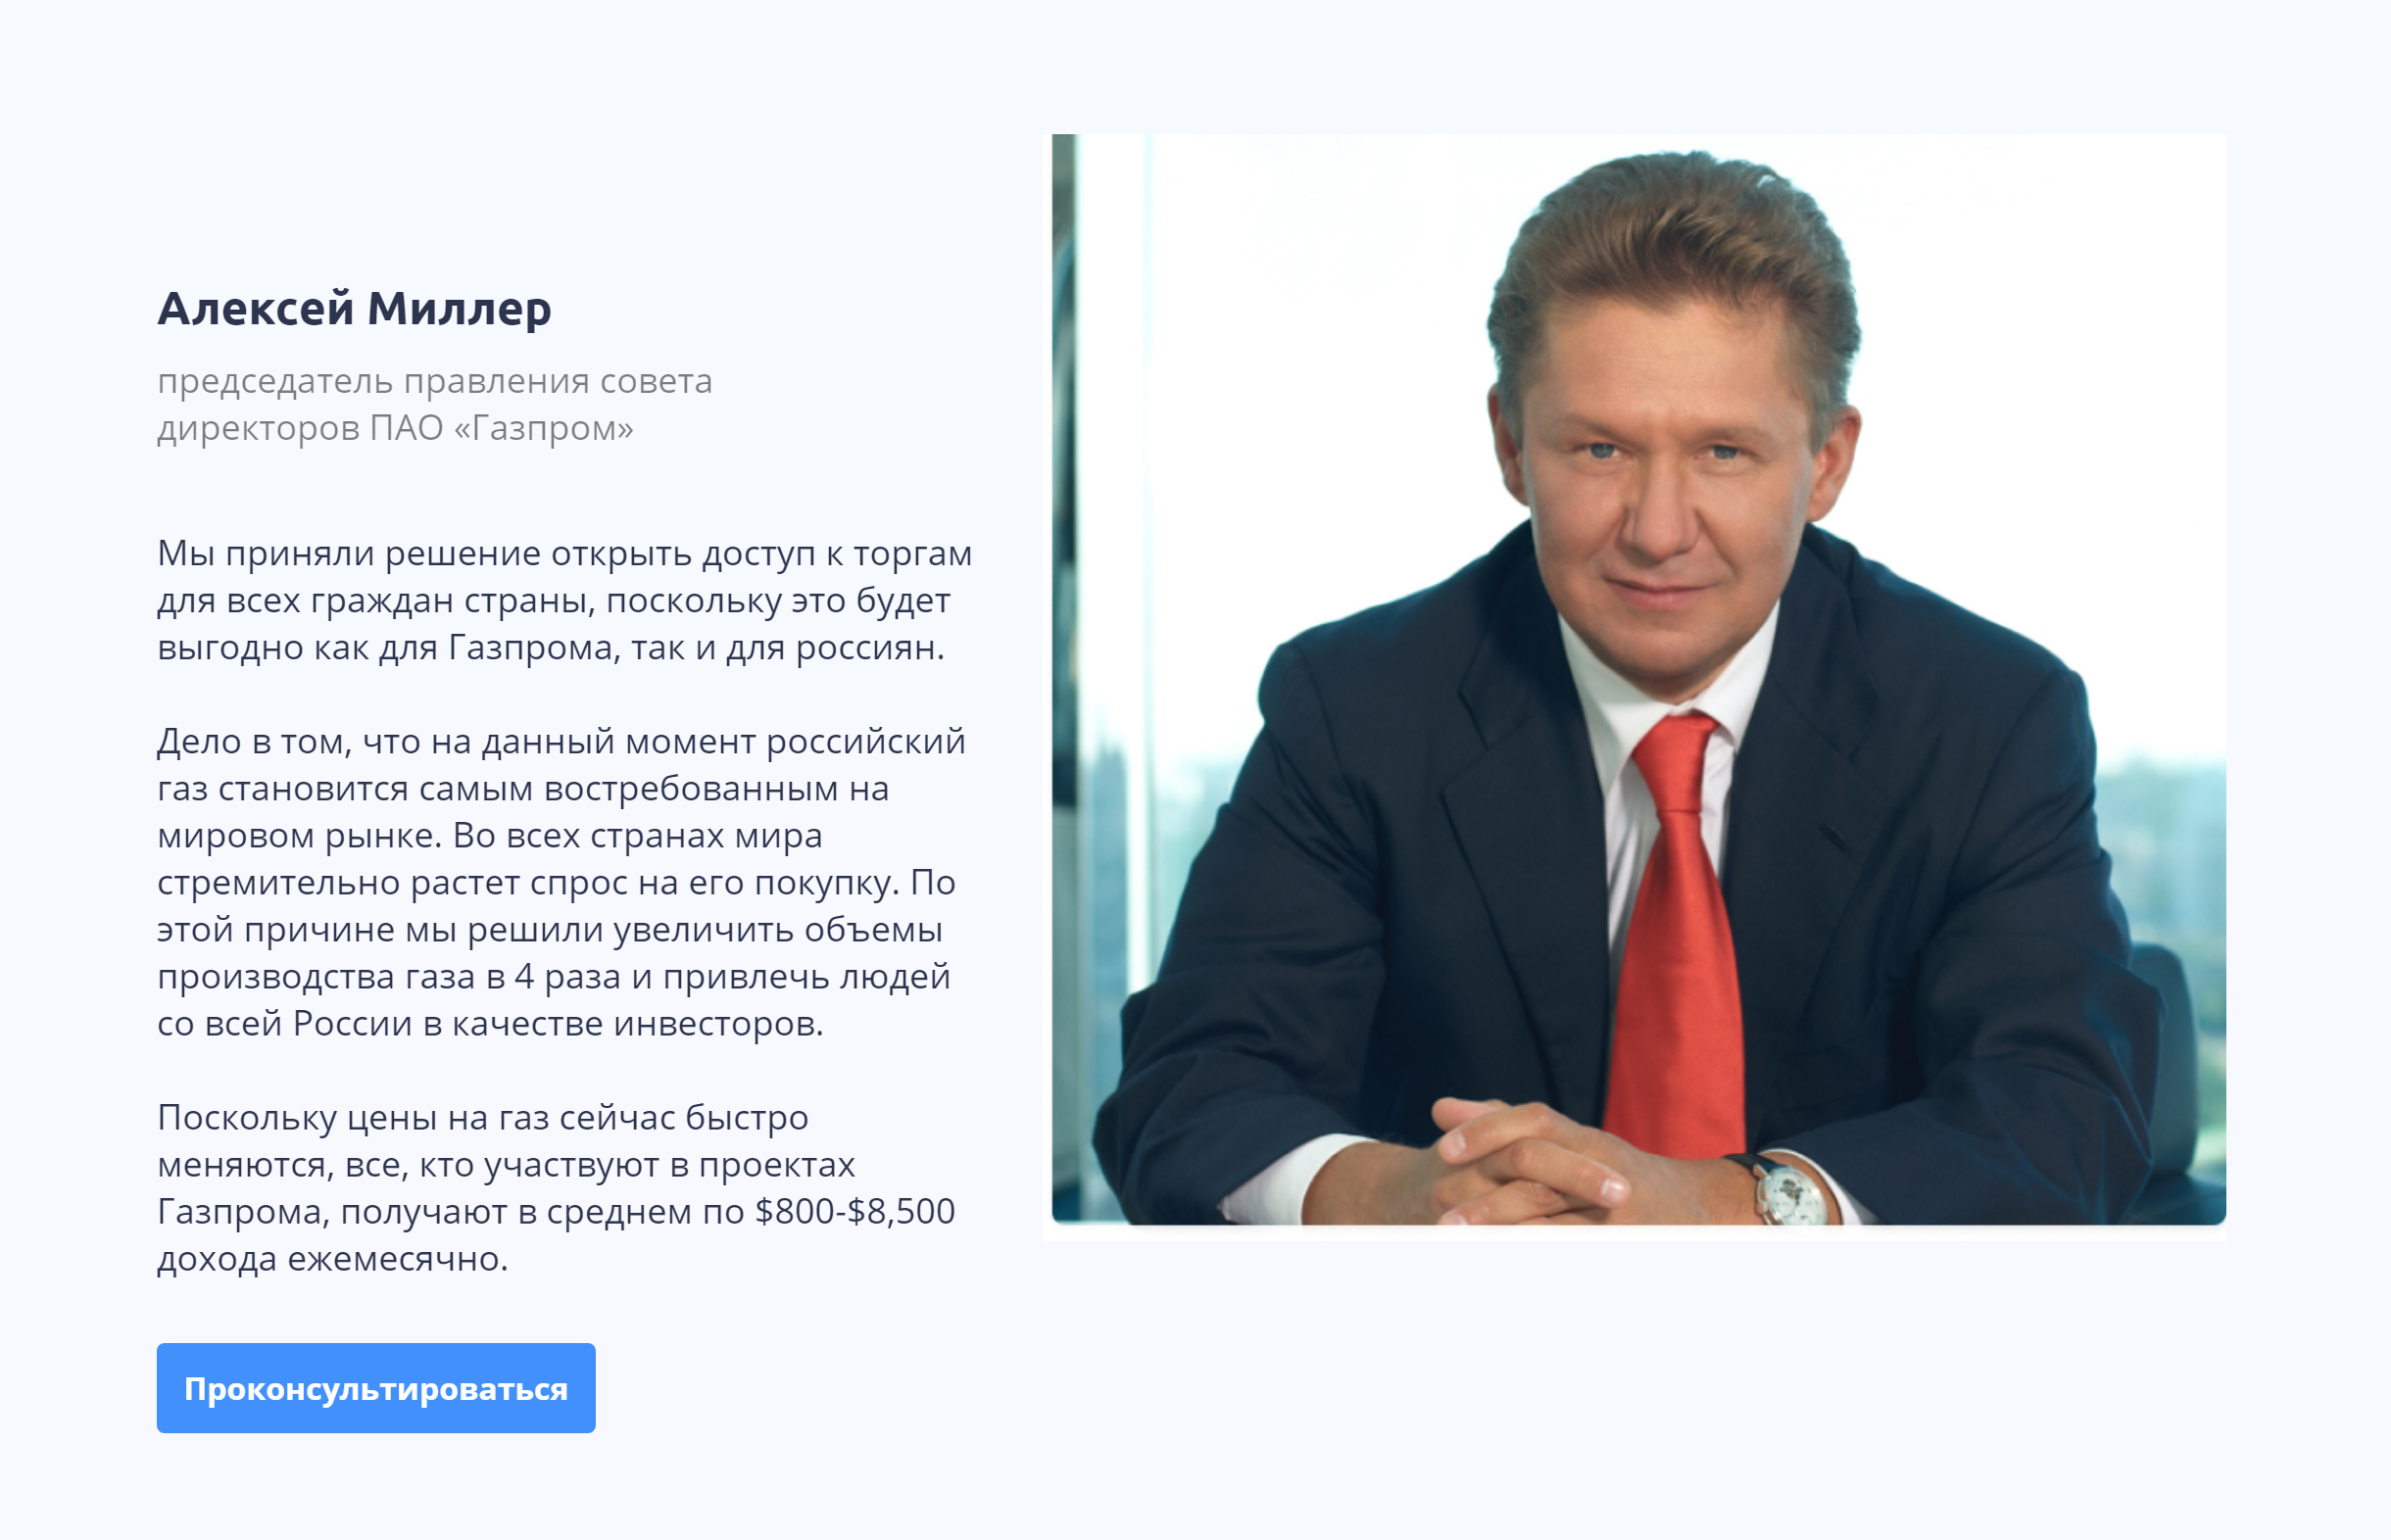 От лица Миллера мне пообещали до 8500 $ в месяц за участие в инвестиционной программе «Газпрома»